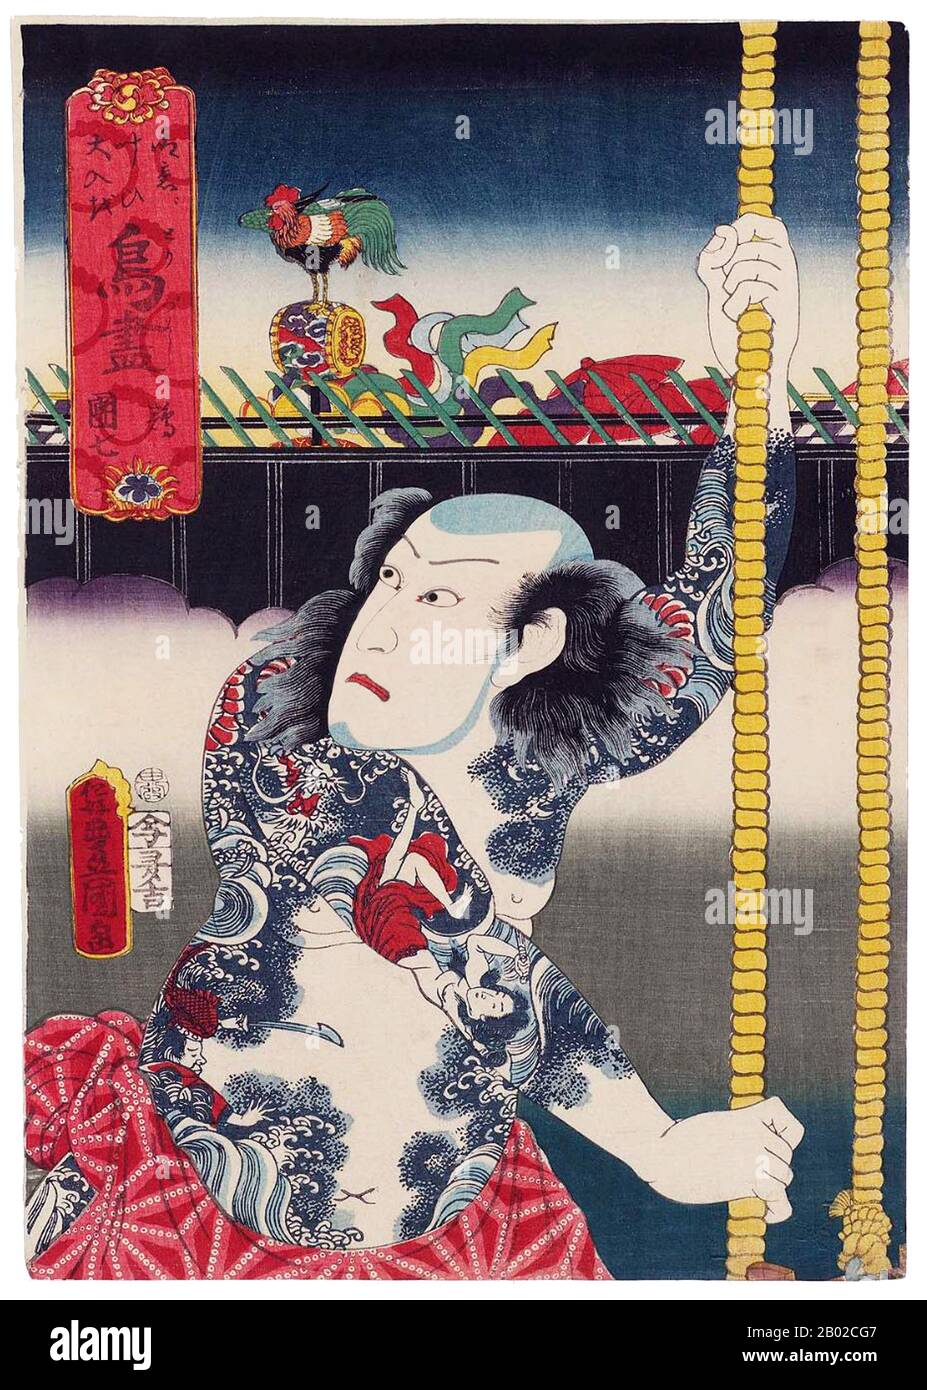 Utagawa Kunisada (1786 – 12 gennaio 1865) (giapponese: 歌川 国貞, noto anche come Utagawa Toyokuni III 三代歌川豊国) è stato il designer più popolare, prolifico e finanziariamente di successo di stampe di blocchi di legno ukiyo-e in Giappone 19th-secolo. Nel suo tempo, la sua reputazione superò di gran lunga quella dei suoi contemporanei, Hokusai, Hiroshige e Kuniyoshi. Utagawa Kunisada II (歌川国定) (1823–1880) è stato un . Allievo di Utagawa Kunisada i, ha firmato gran parte della sua opera "Baidō Kunimasa III". Prese il nome di Kunisada dopo aver sposato gli eldes del suo maestro Foto Stock